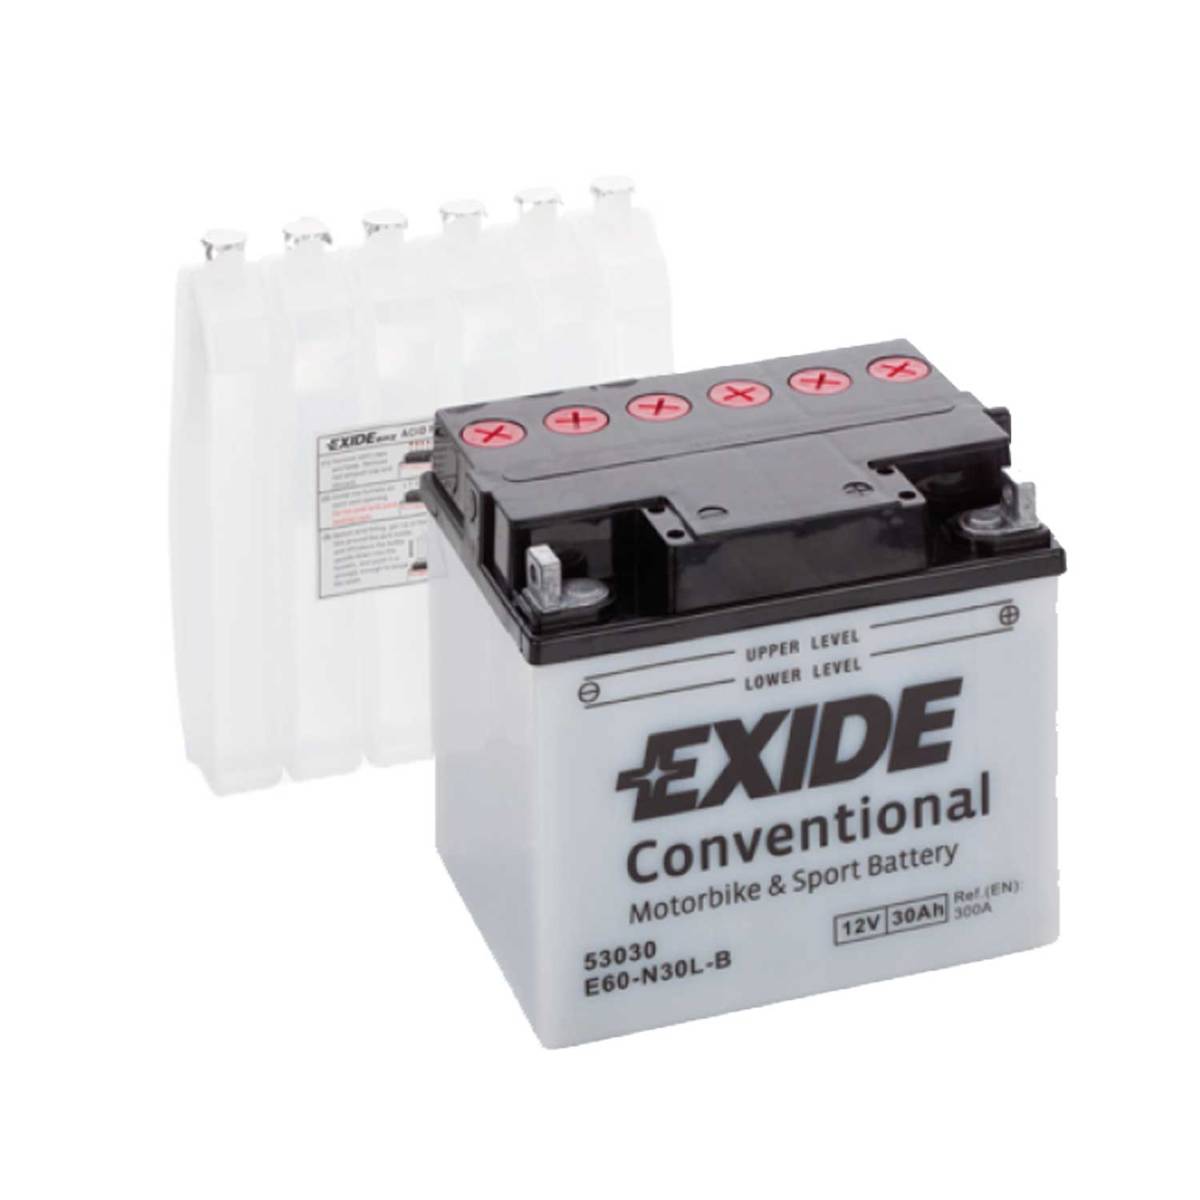 Exide E60-N30L-B Batteria moto 12V 30Ah 300A DIN 53030